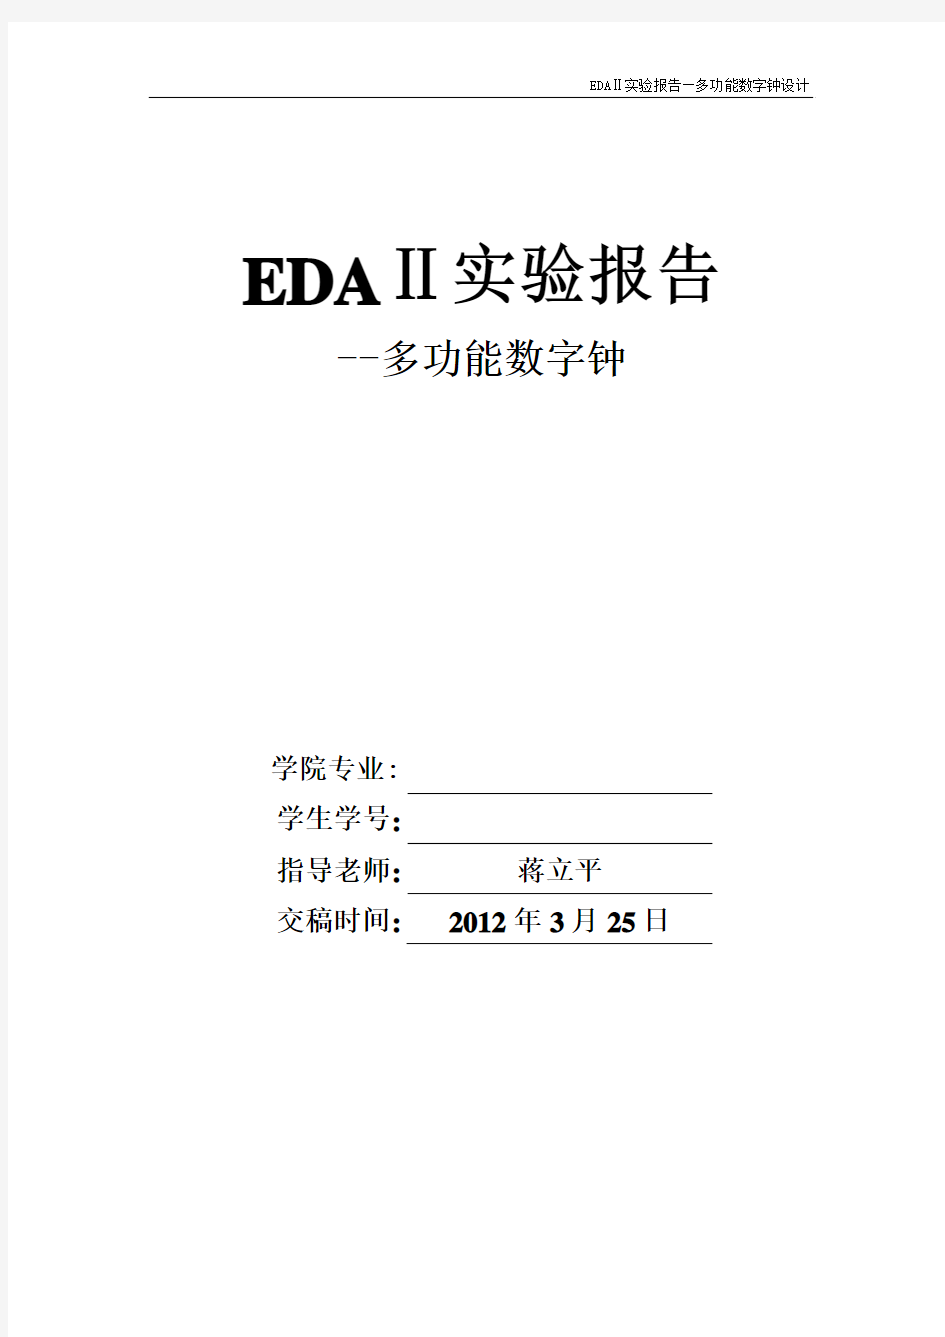 南理工EDA2多功能数字钟设计实验报告(蒋立平)——优秀